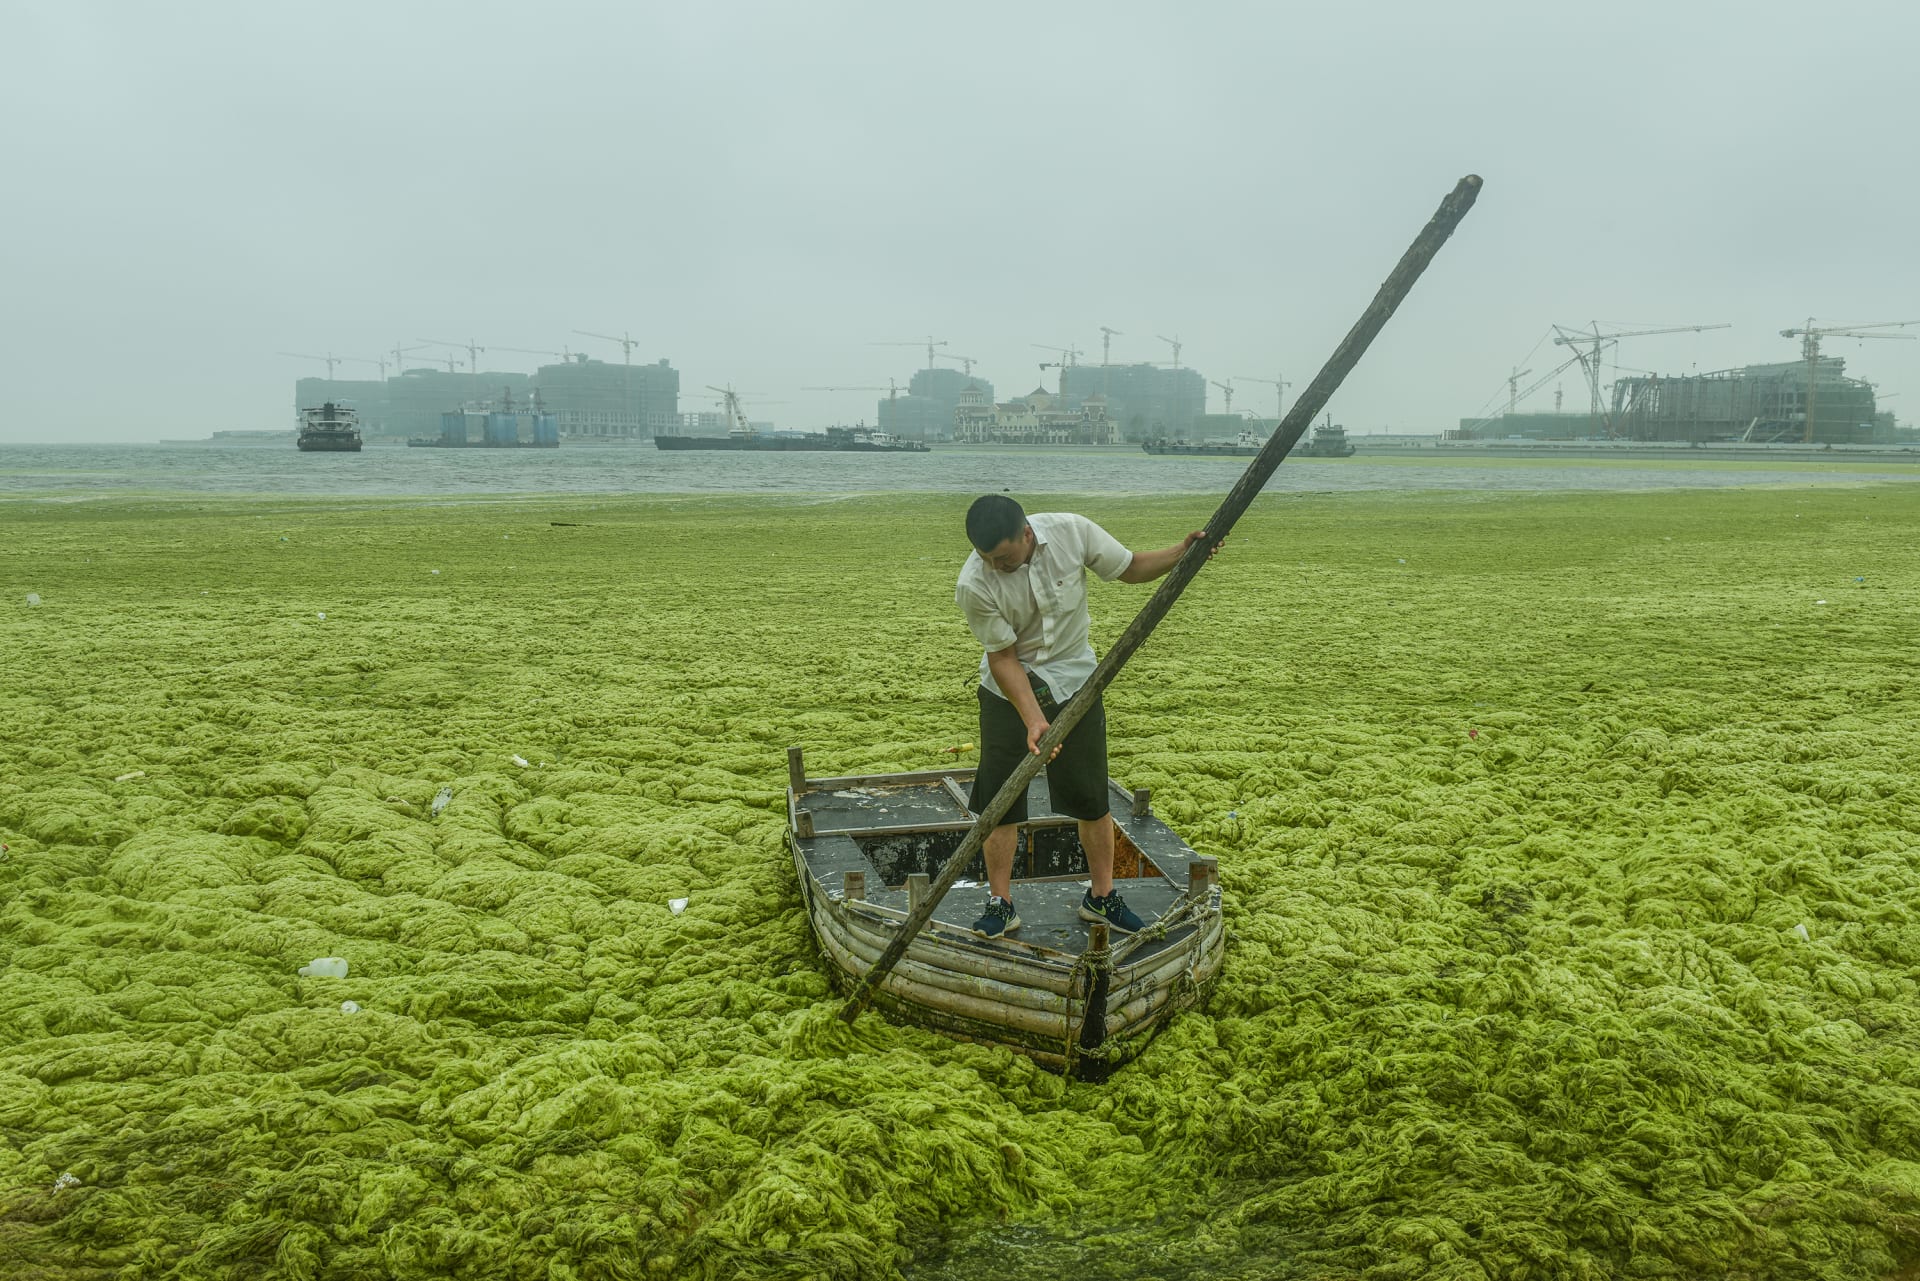 إليك أبرز الصور من مسابقة تصوير تسلط الضوء على الحياة في الصين